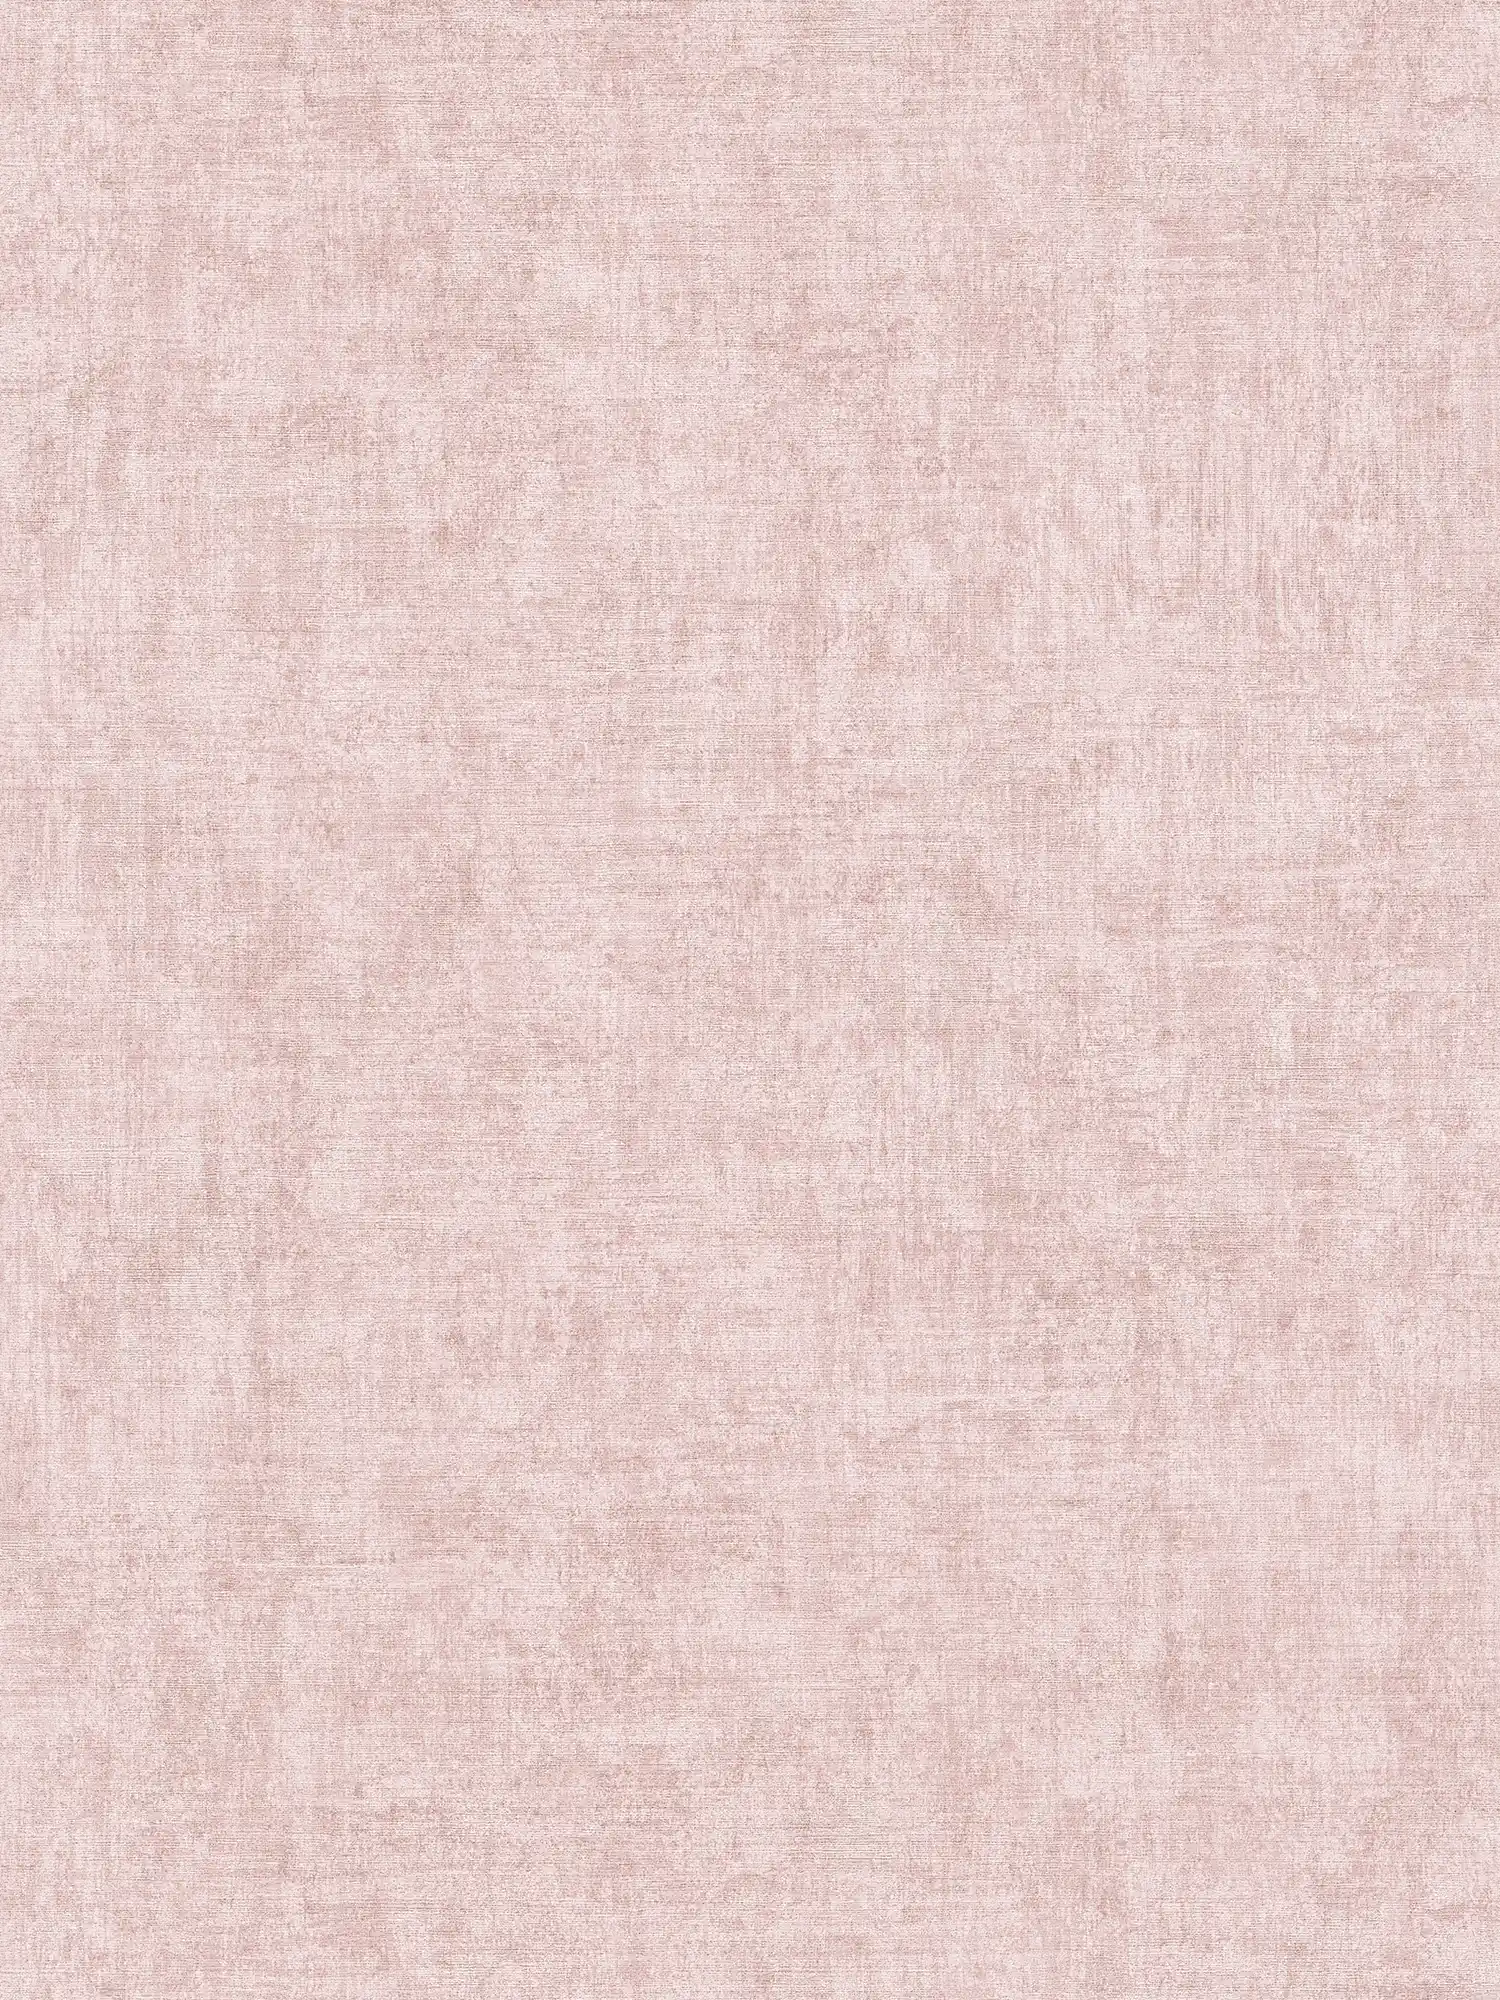 Non-woven wallpaper plain, mottled, textured pattern - pink
